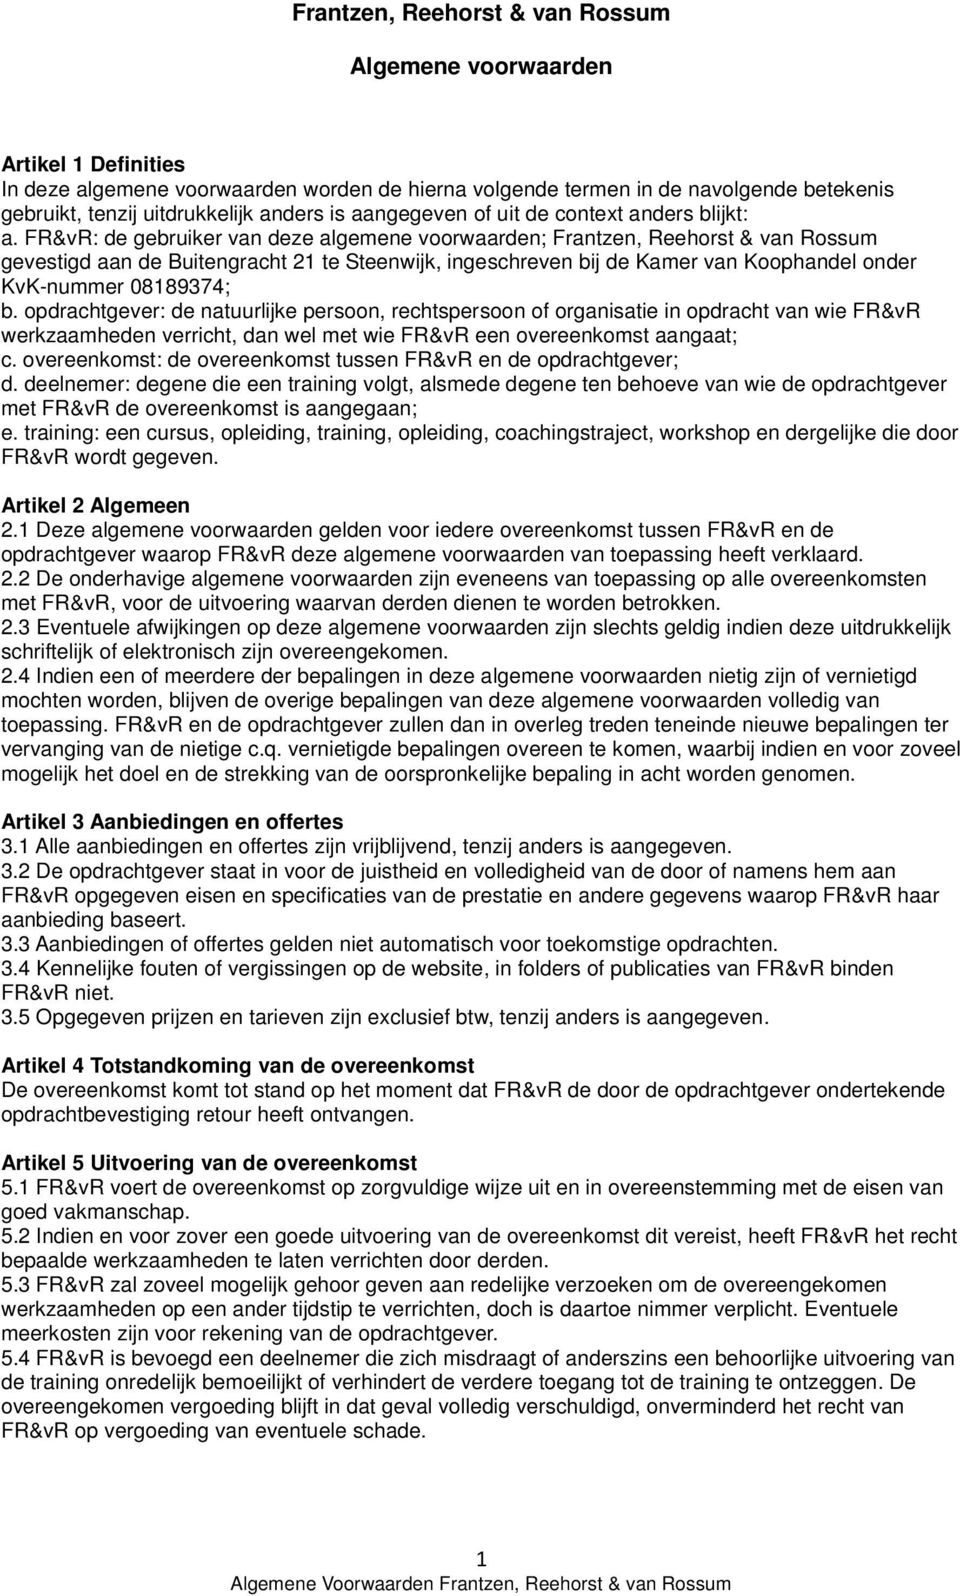 FR&vR: de gebruiker van deze algemene voorwaarden; Frantzen, Reehorst & van Rossum gevestigd aan de Buitengracht 21 te Steenwijk, ingeschreven bij de Kamer van Koophandel onder KvK-nummer 08189374; b.